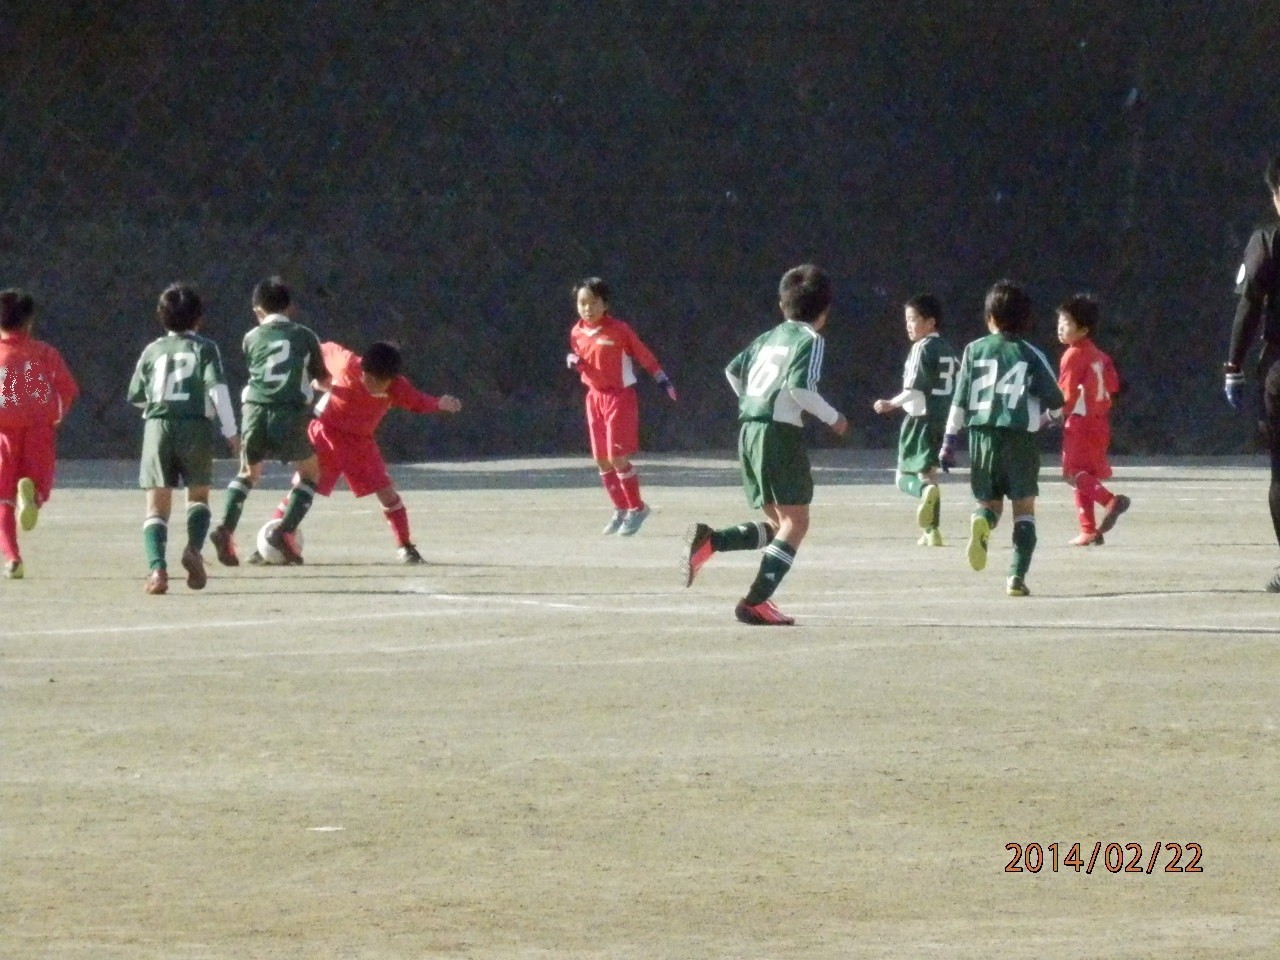 スーパーリーグ チャンピオンカップ U-9(3年生)